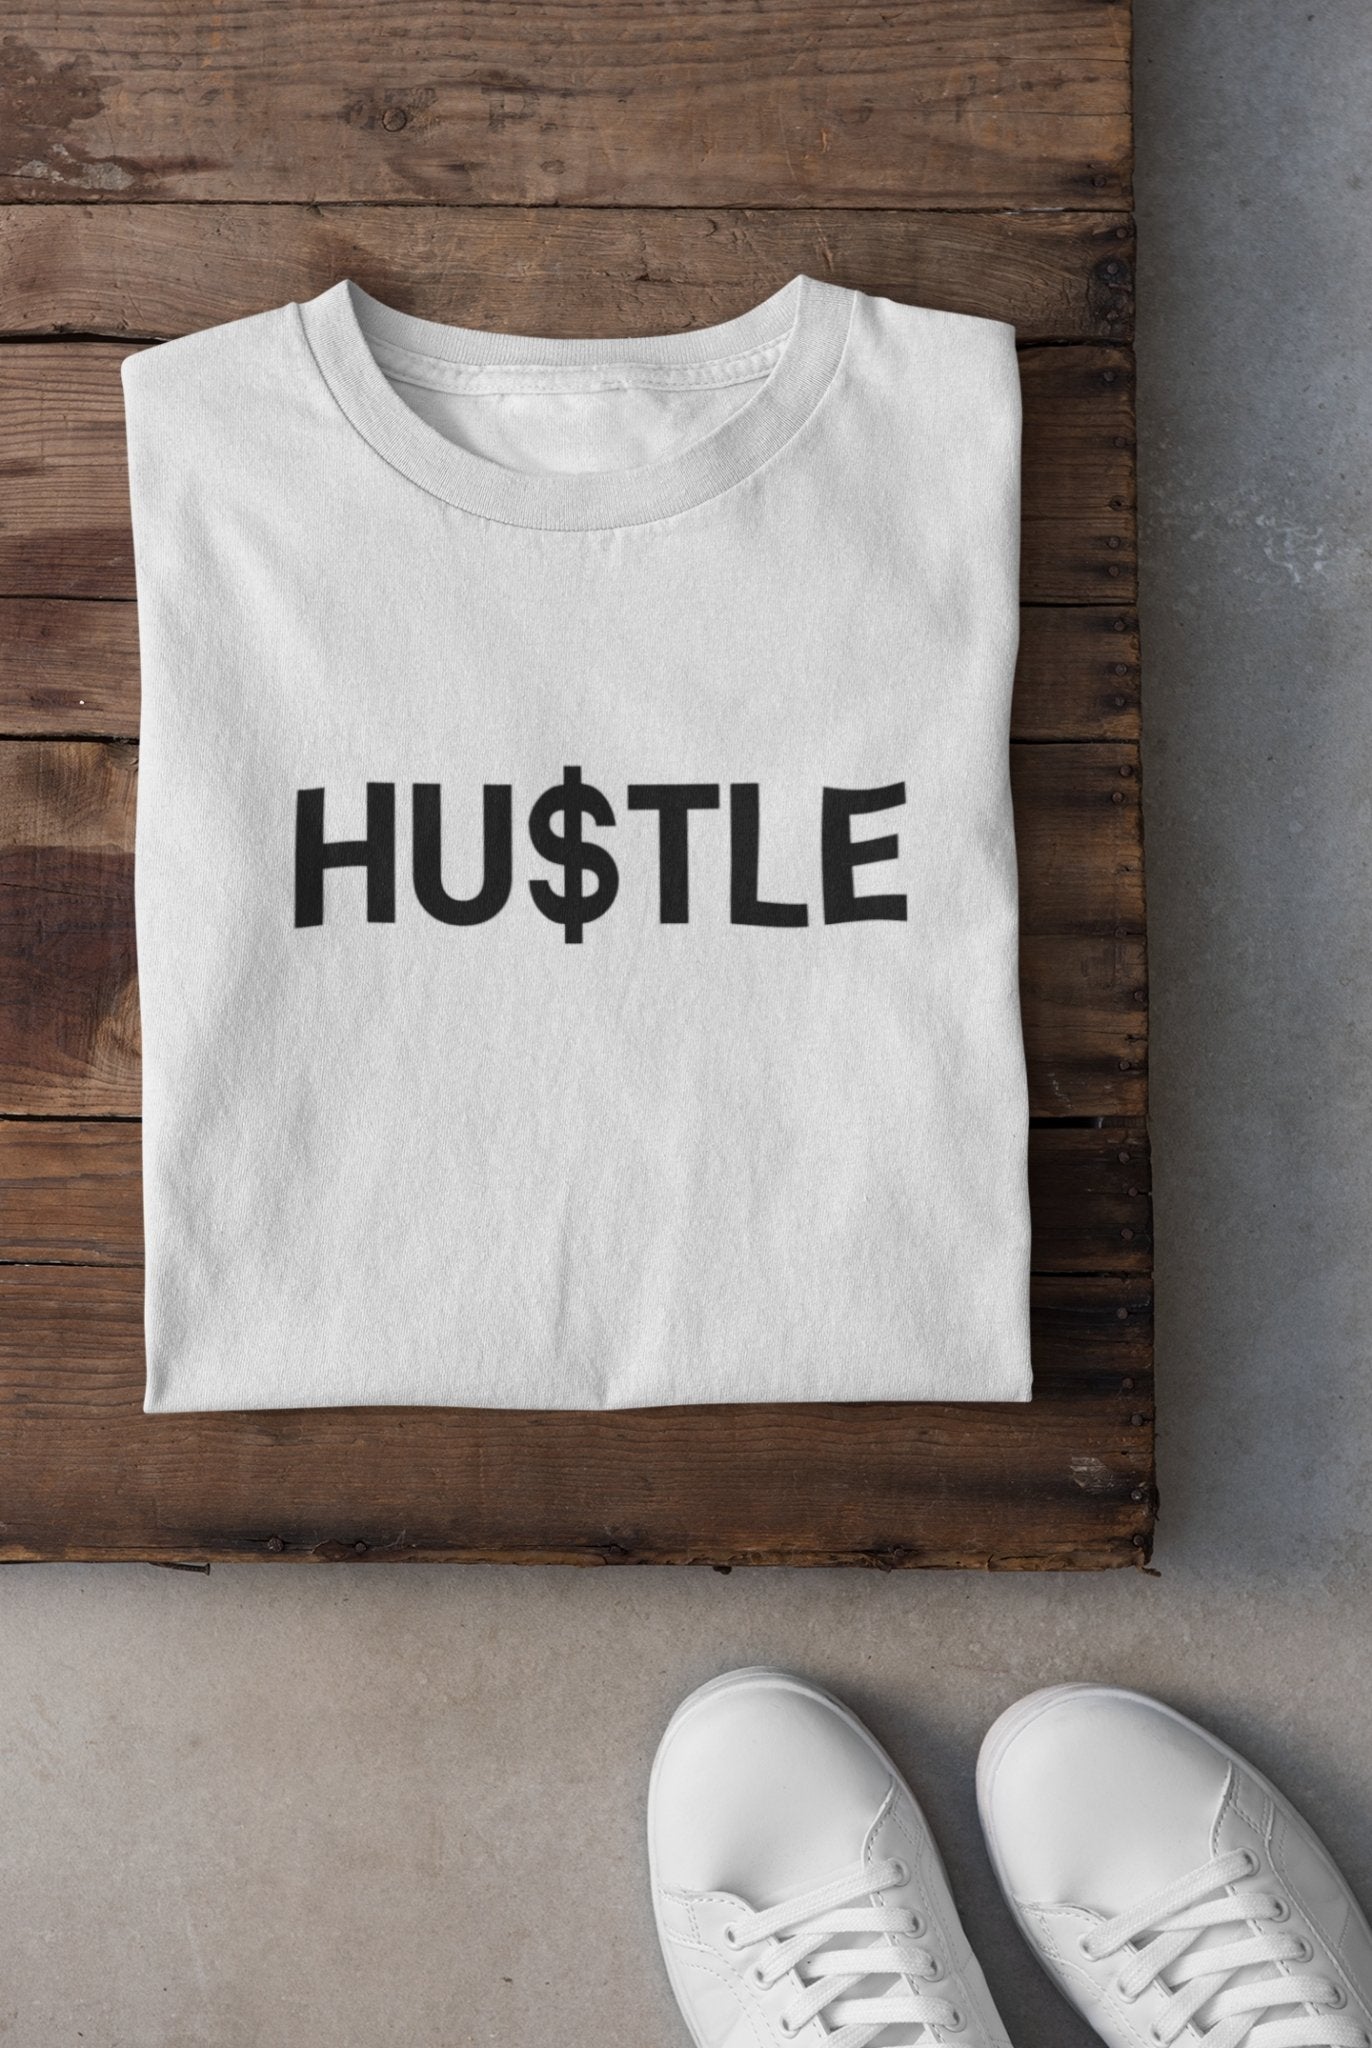 Hustle Teenpreneur Women Half Sleeves T-shirt- FunkyTeesClub - Funky Tees Club